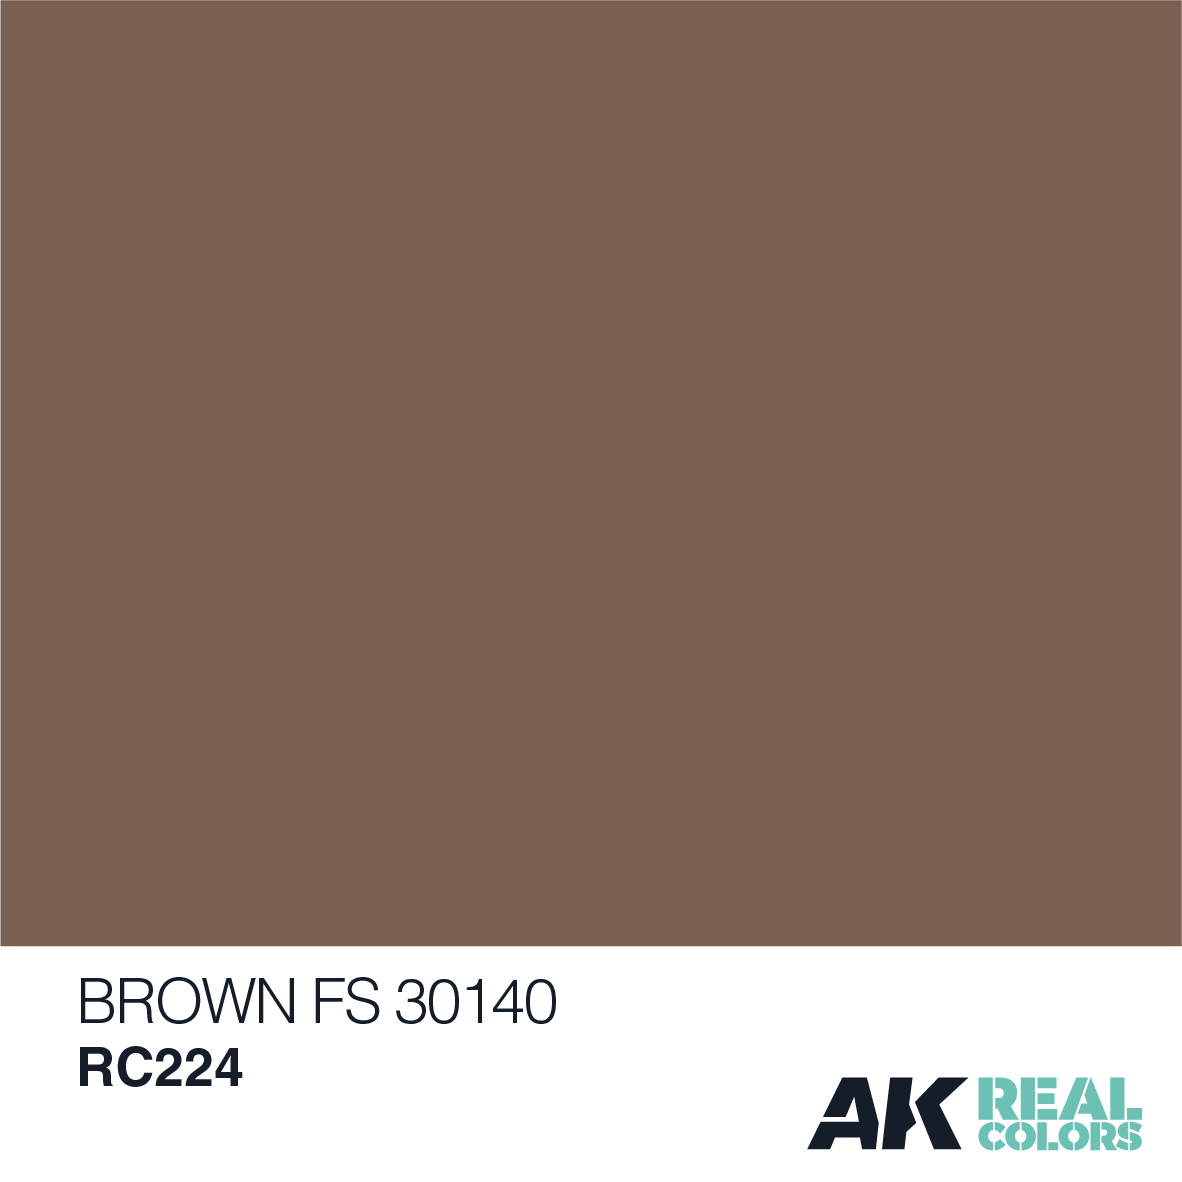 Brown FS 30140